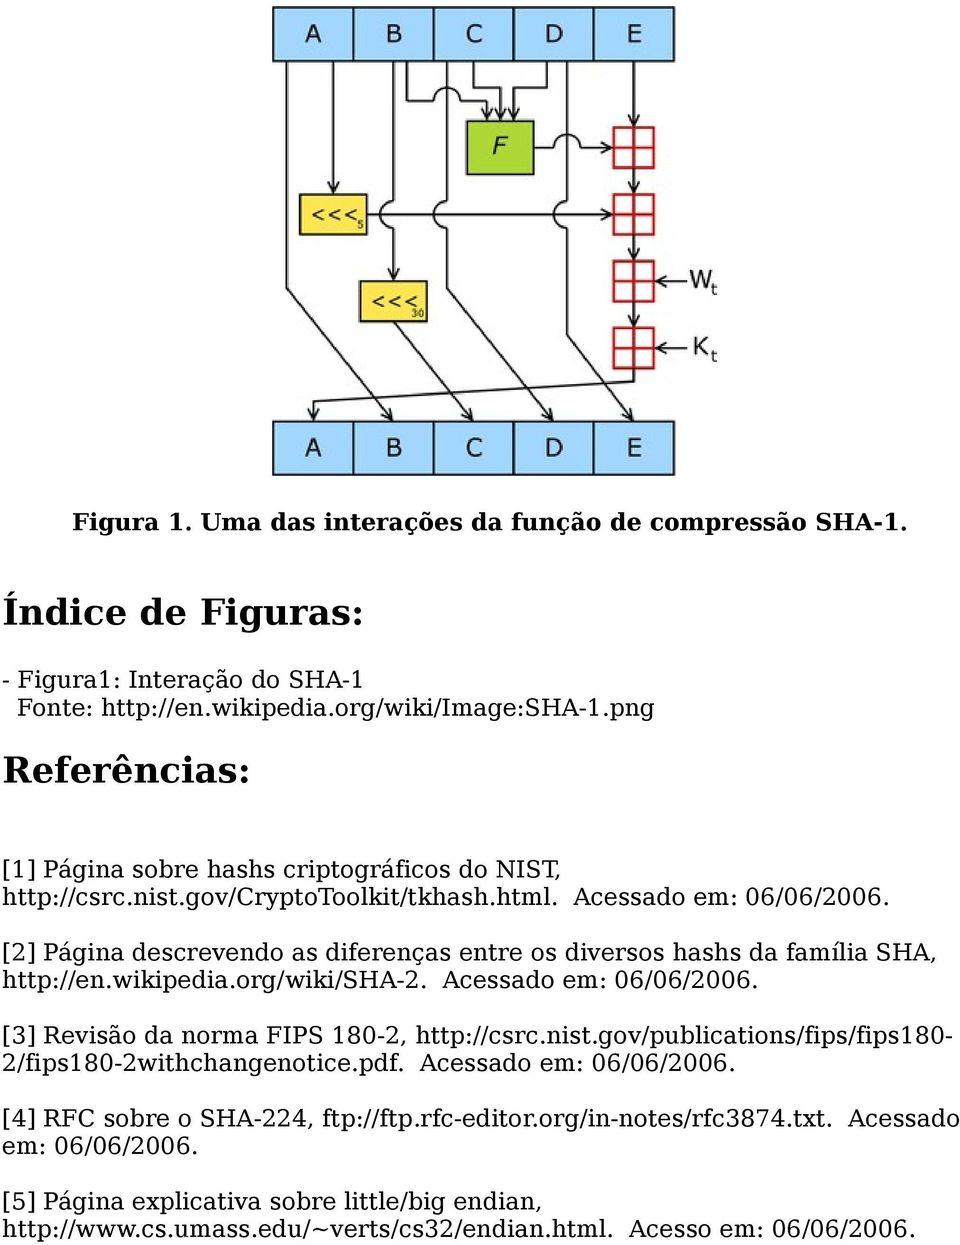 [2] Página descrevendo as diferenças entre os diversos hashs da família SHA, http://en.wikipedia.org/wiki/sha-2. Acessado em: 06/06/2006. [3] Revisão da norma FIPS 180-2, http://csrc.nist.